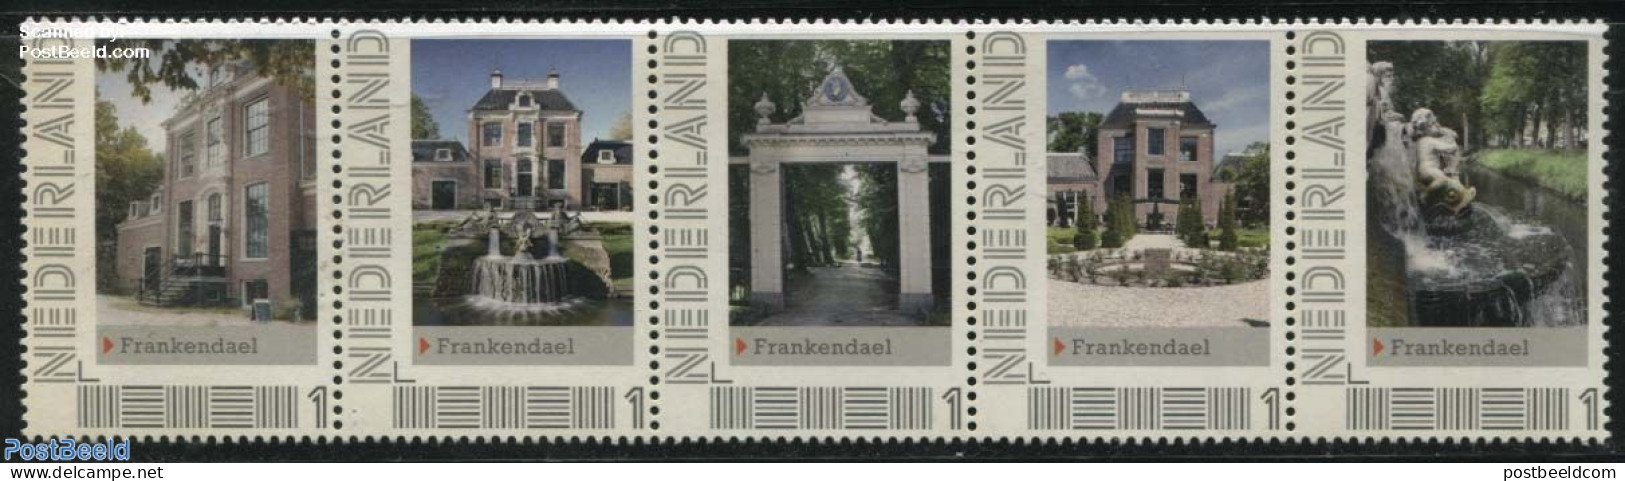 Netherlands - Personal Stamps TNT/PNL 2012 Frankendael 5v [::::], Mint NH, Art - Castles & Fortifications - Castelli